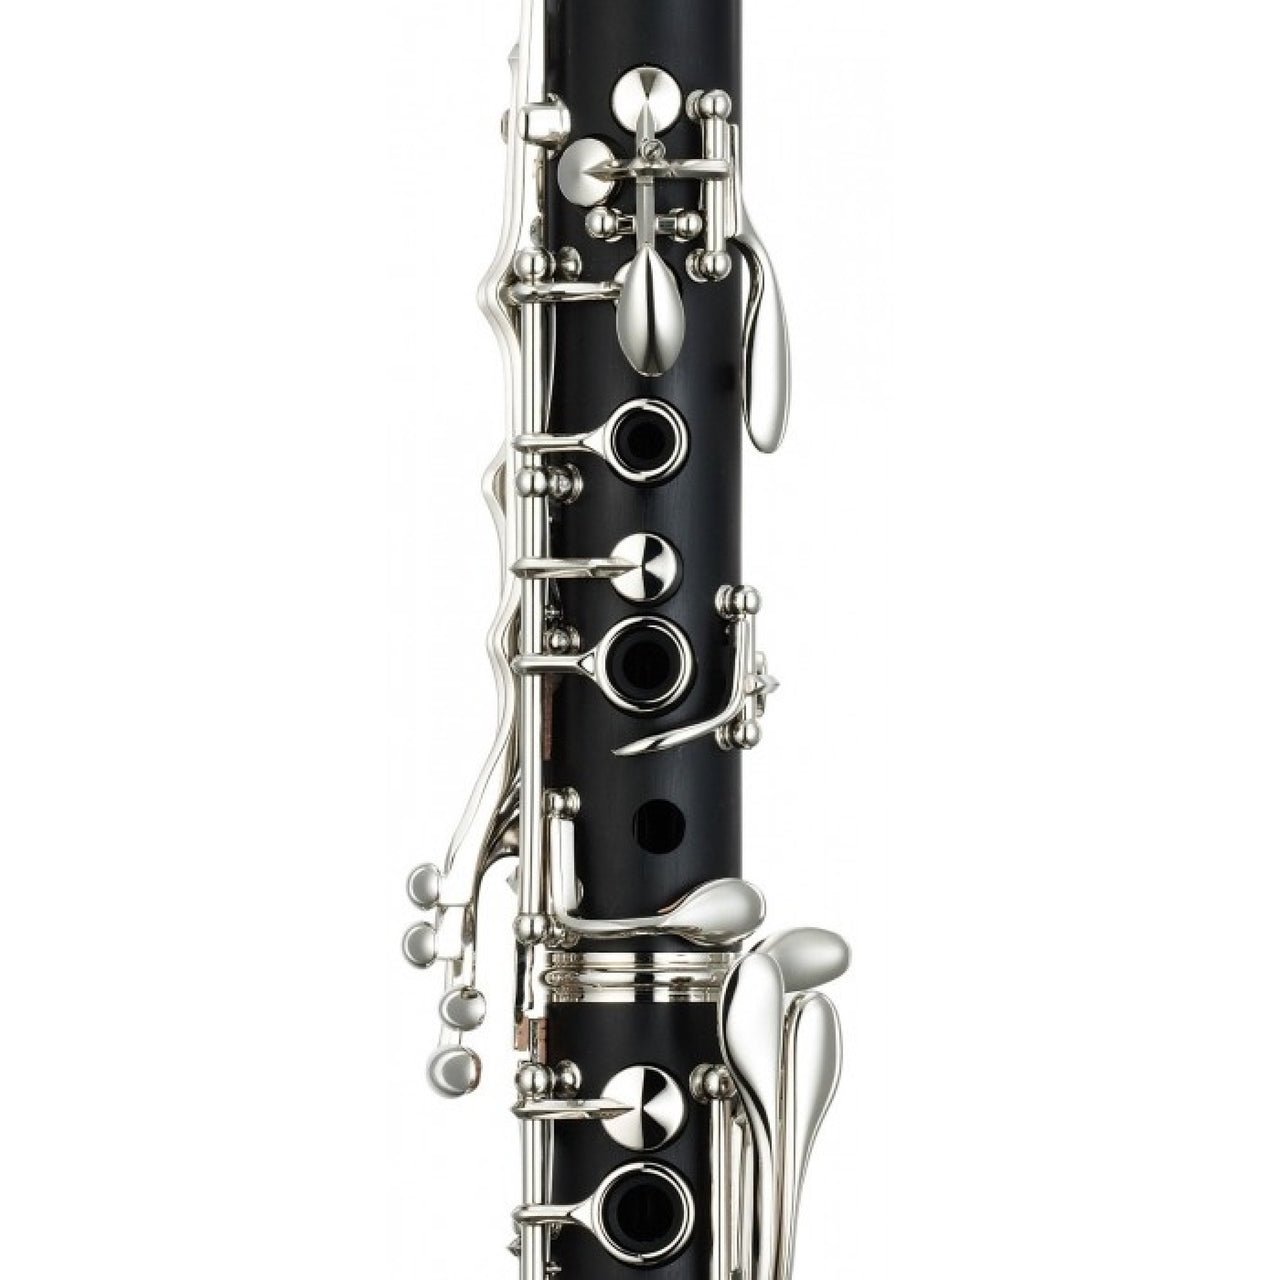 Clarinete Yamaha De Pasta En Bb, Ycl-255